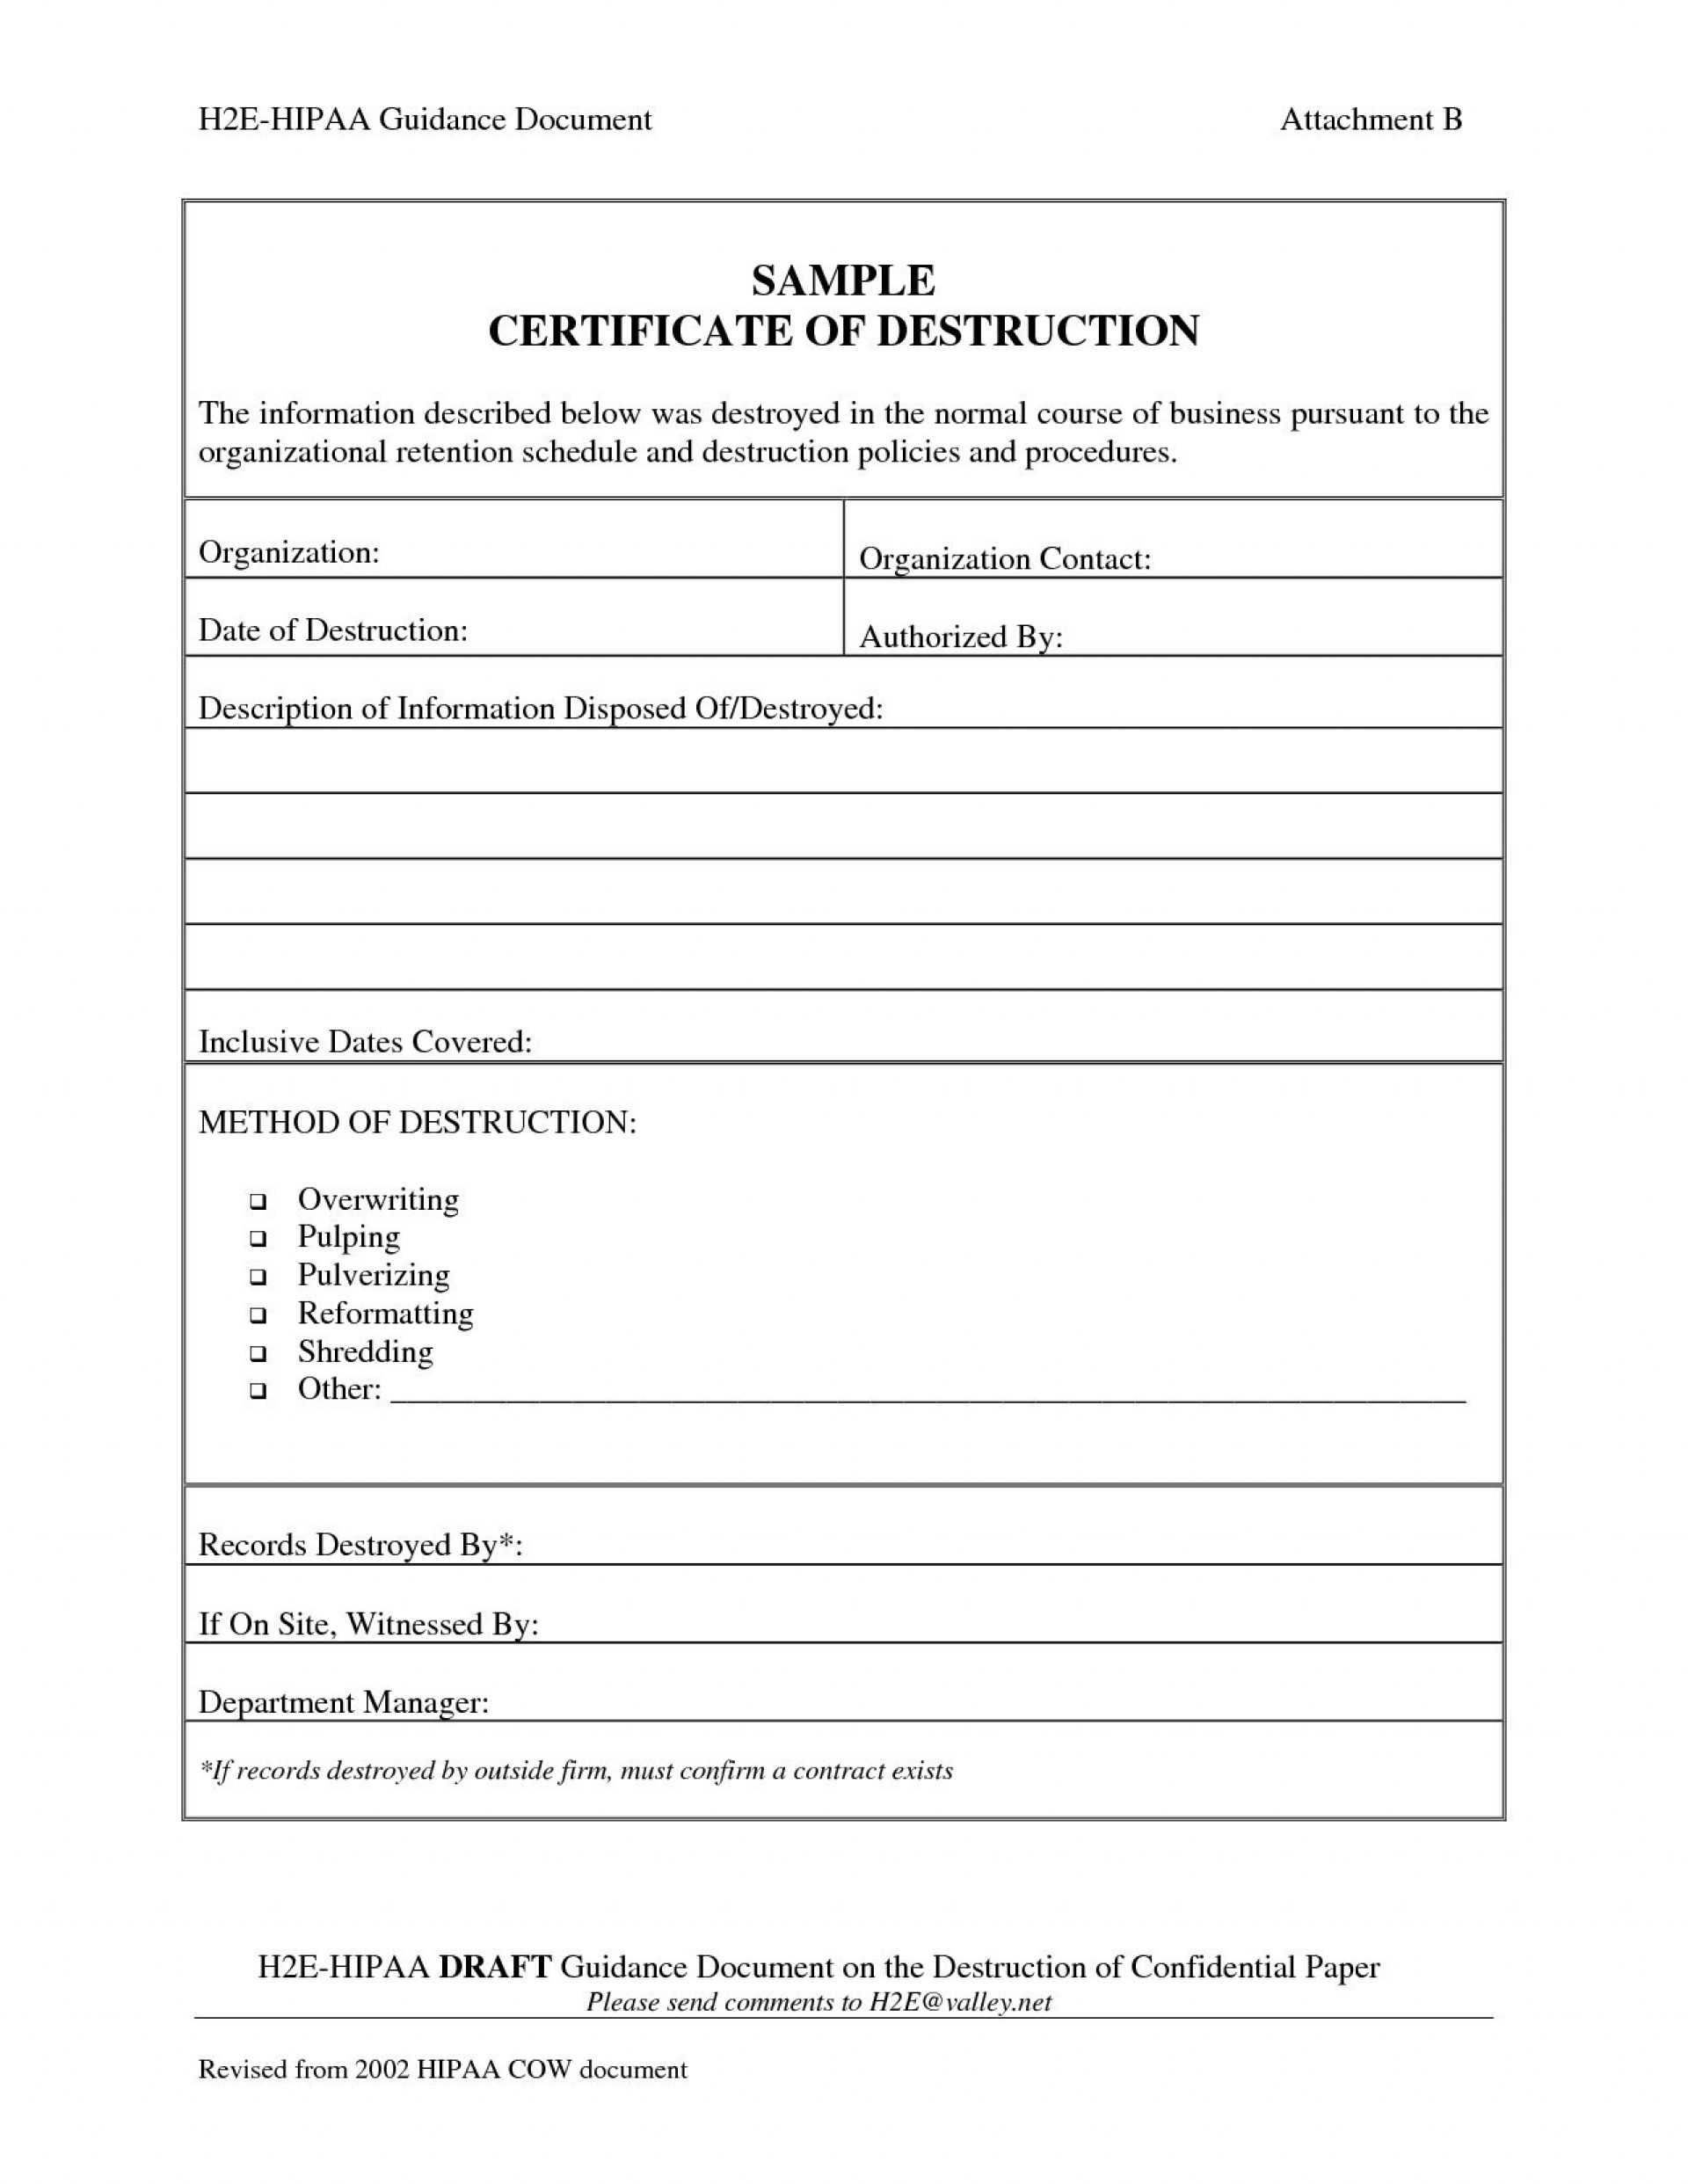 005 Certificate Of Destruction Template Ideas Exceptional Intended For Certificate Of Destruction Template